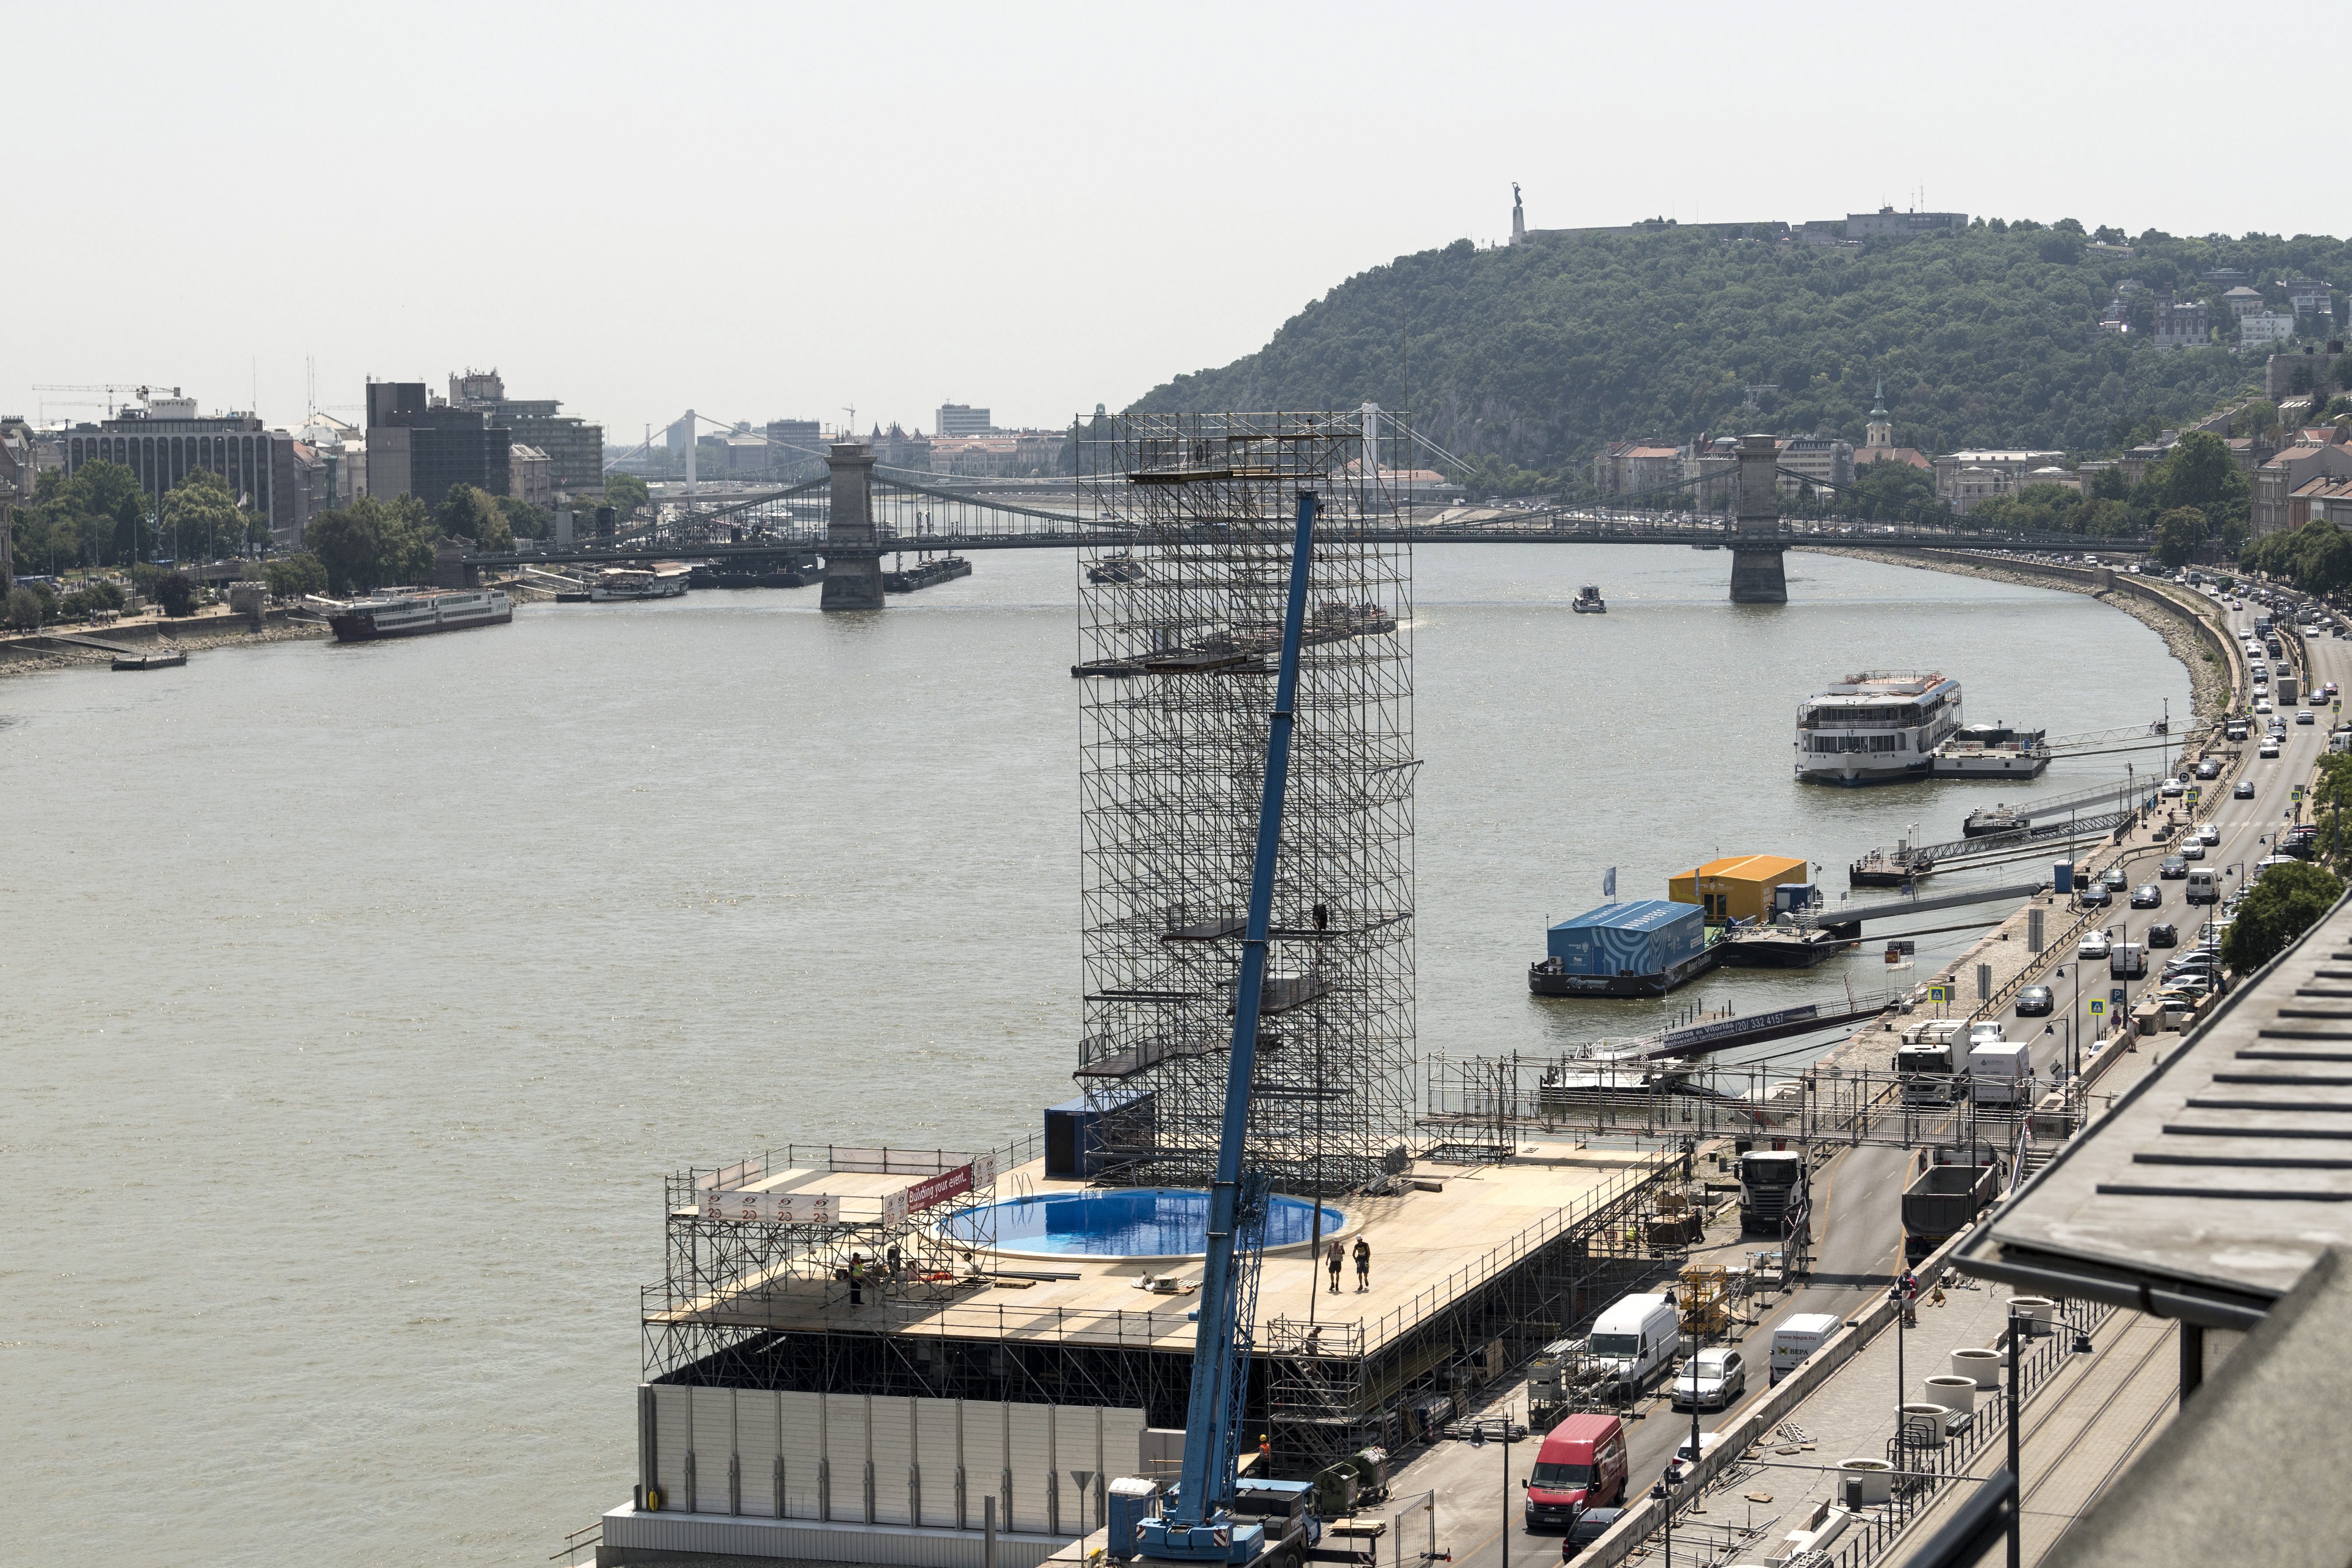 A budapesti vizes vébén most nem lesz óriástoronyugrás, Wladár Sándor szerint „azt használjuk, ami adott”